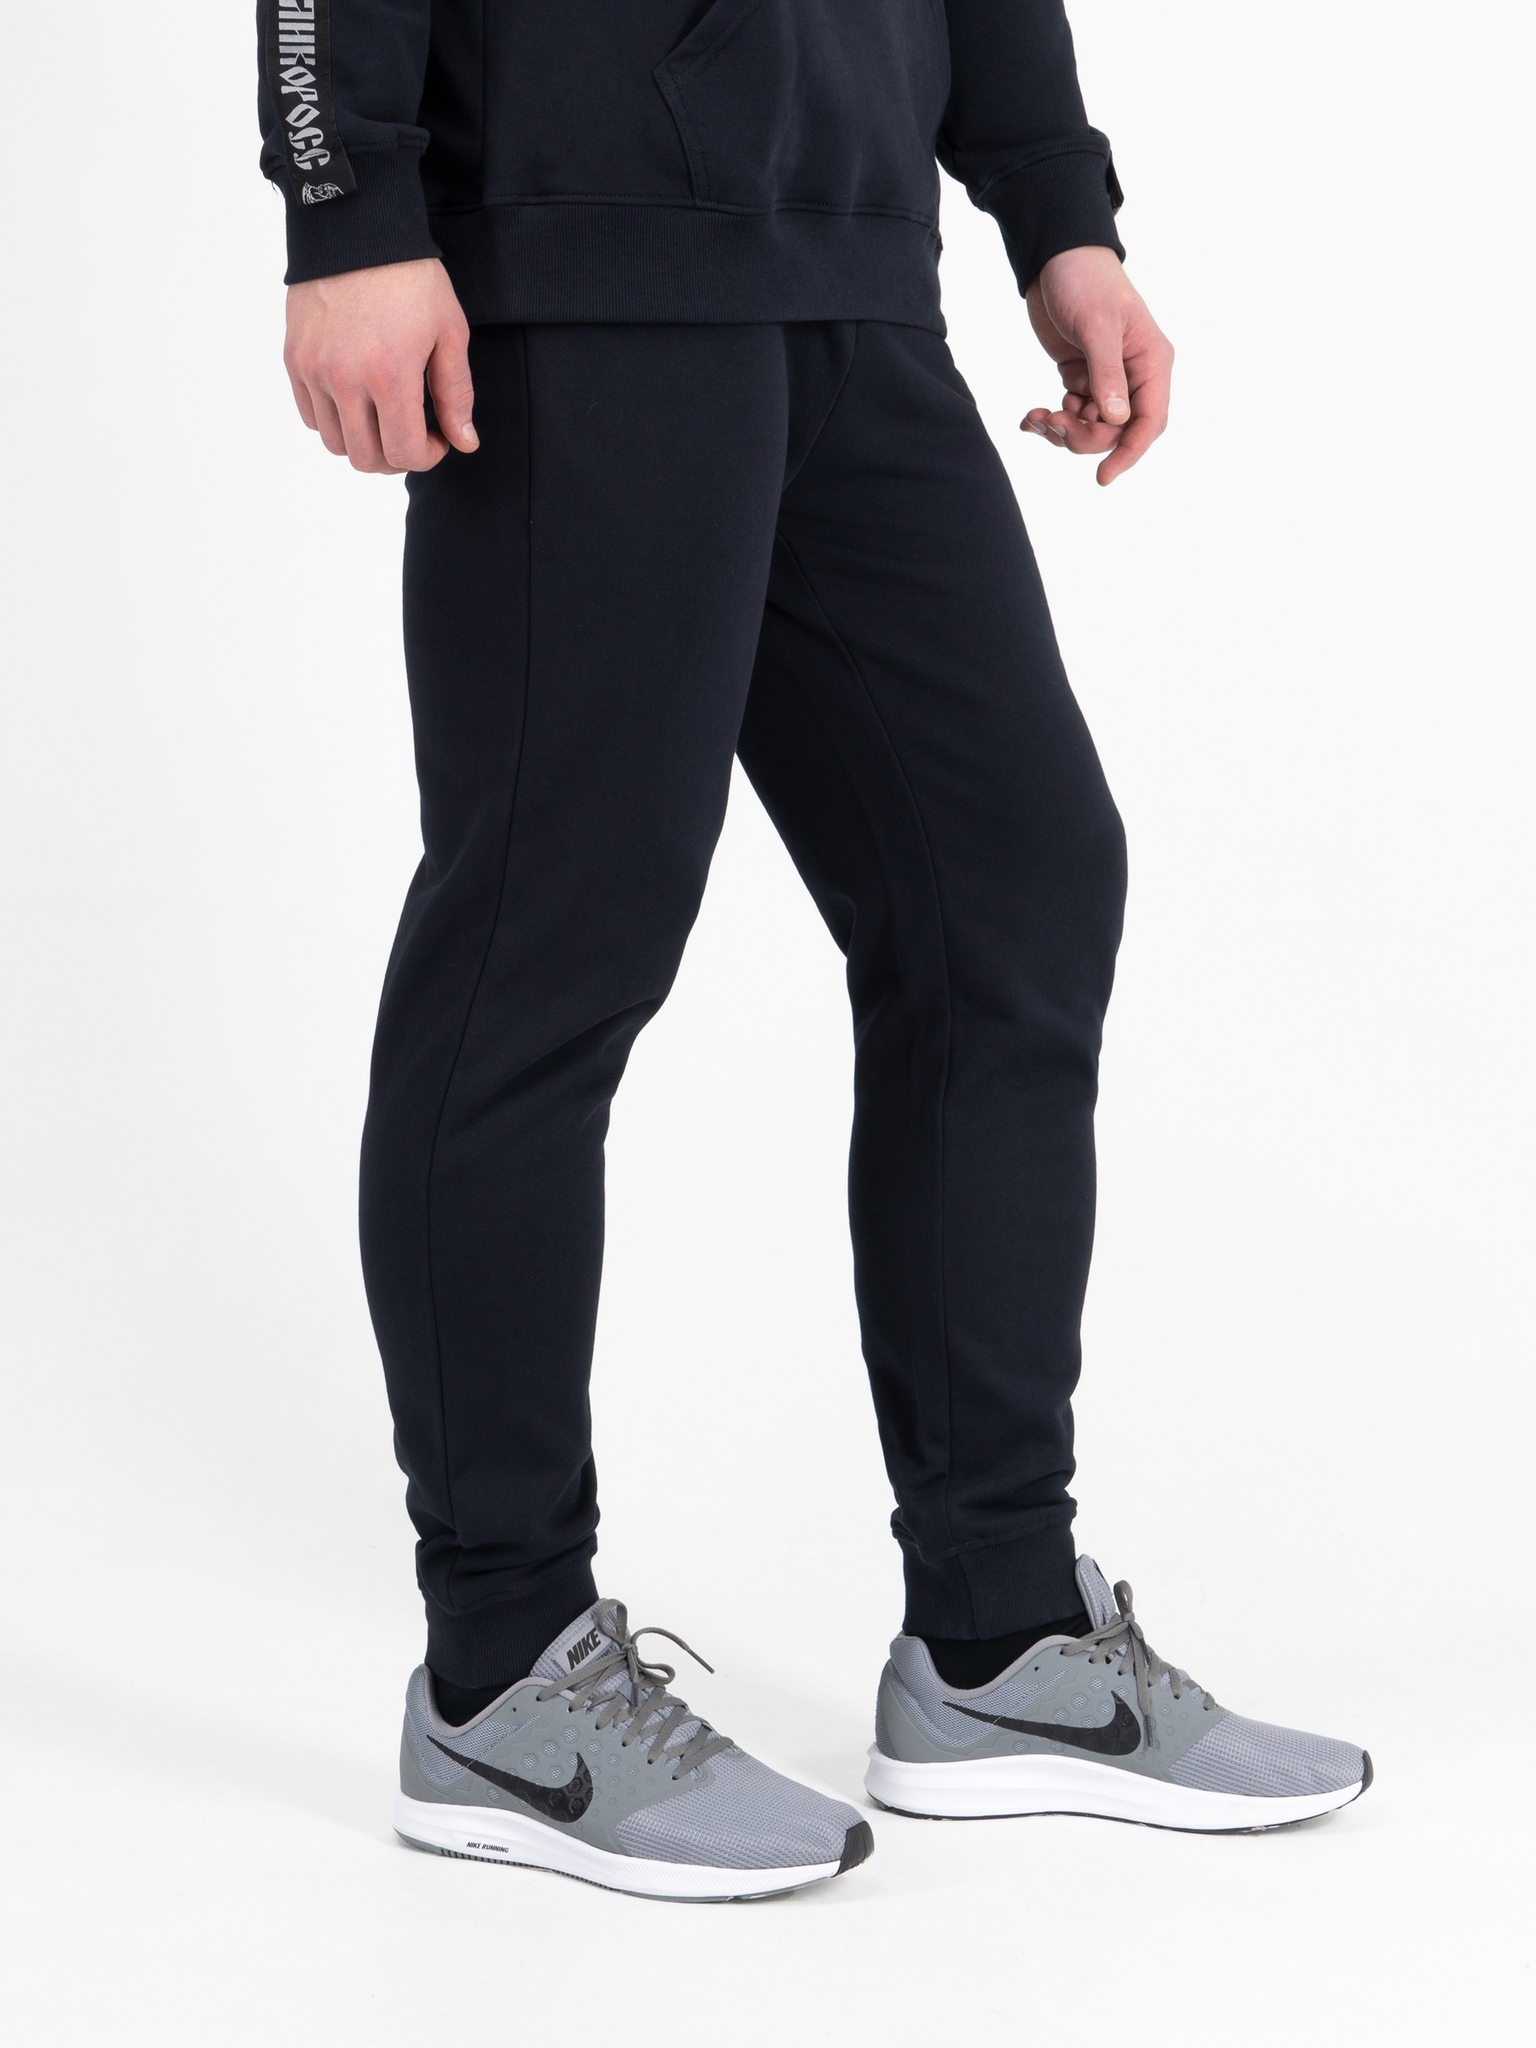 фото Спортивные брюки мужские великоросс bm синие 56 ru